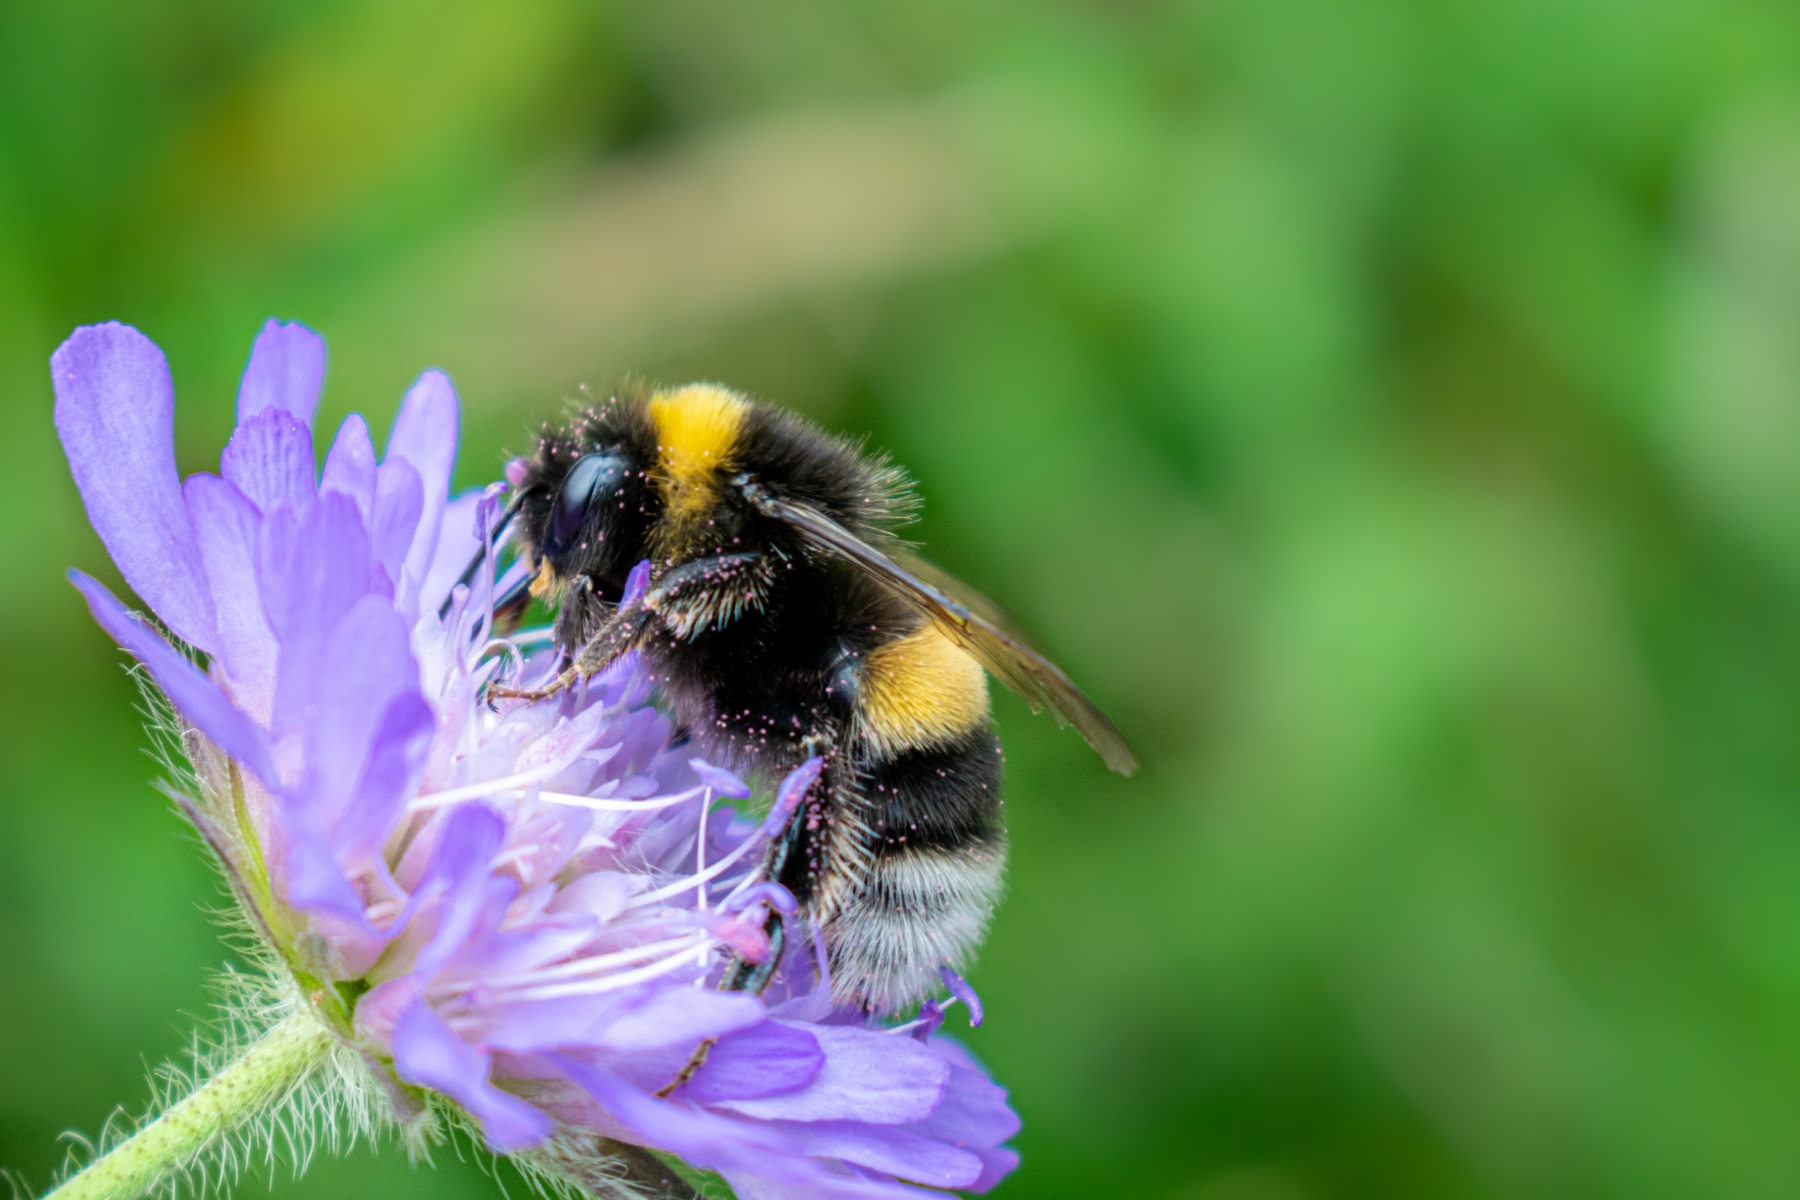 polinização Descubra a importância das abelhas para ecossistemas, agricultura e nossa sobrevivência. Junte-se à causa de sua proteção e conservação.